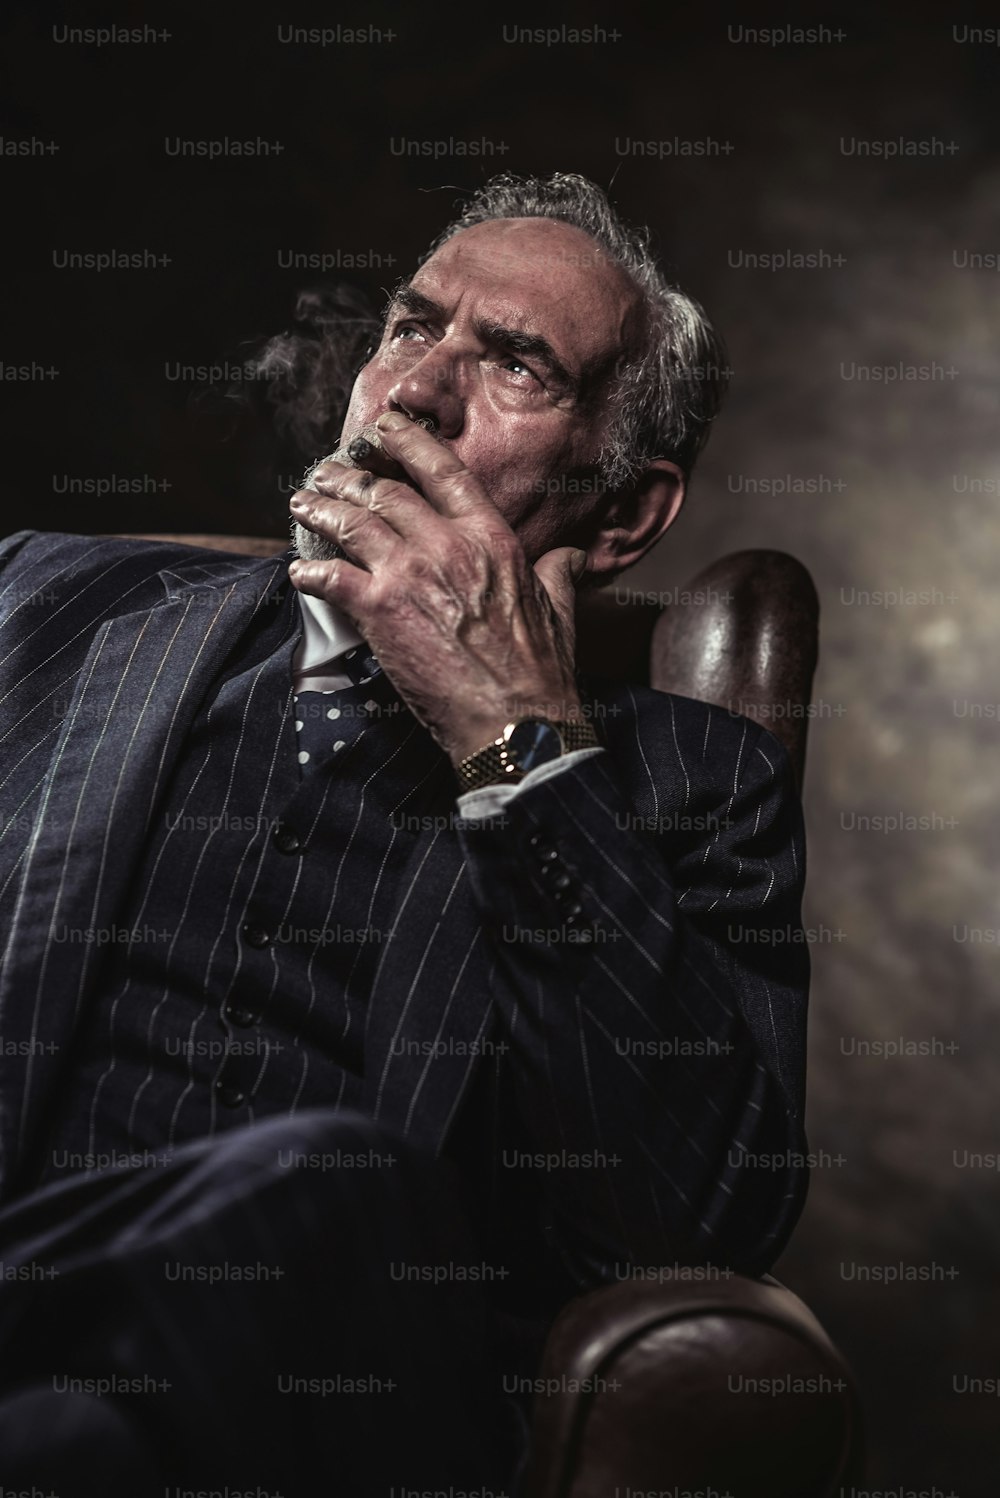 의자에 앉아 있는 특징적인 고위 사업가. 시가를 피우고 있다. 회색 머리와 턱수염은 파란색 줄무늬 양복과 넥타이를 착용하고 있습니다. 갈색 벽에 대하여.